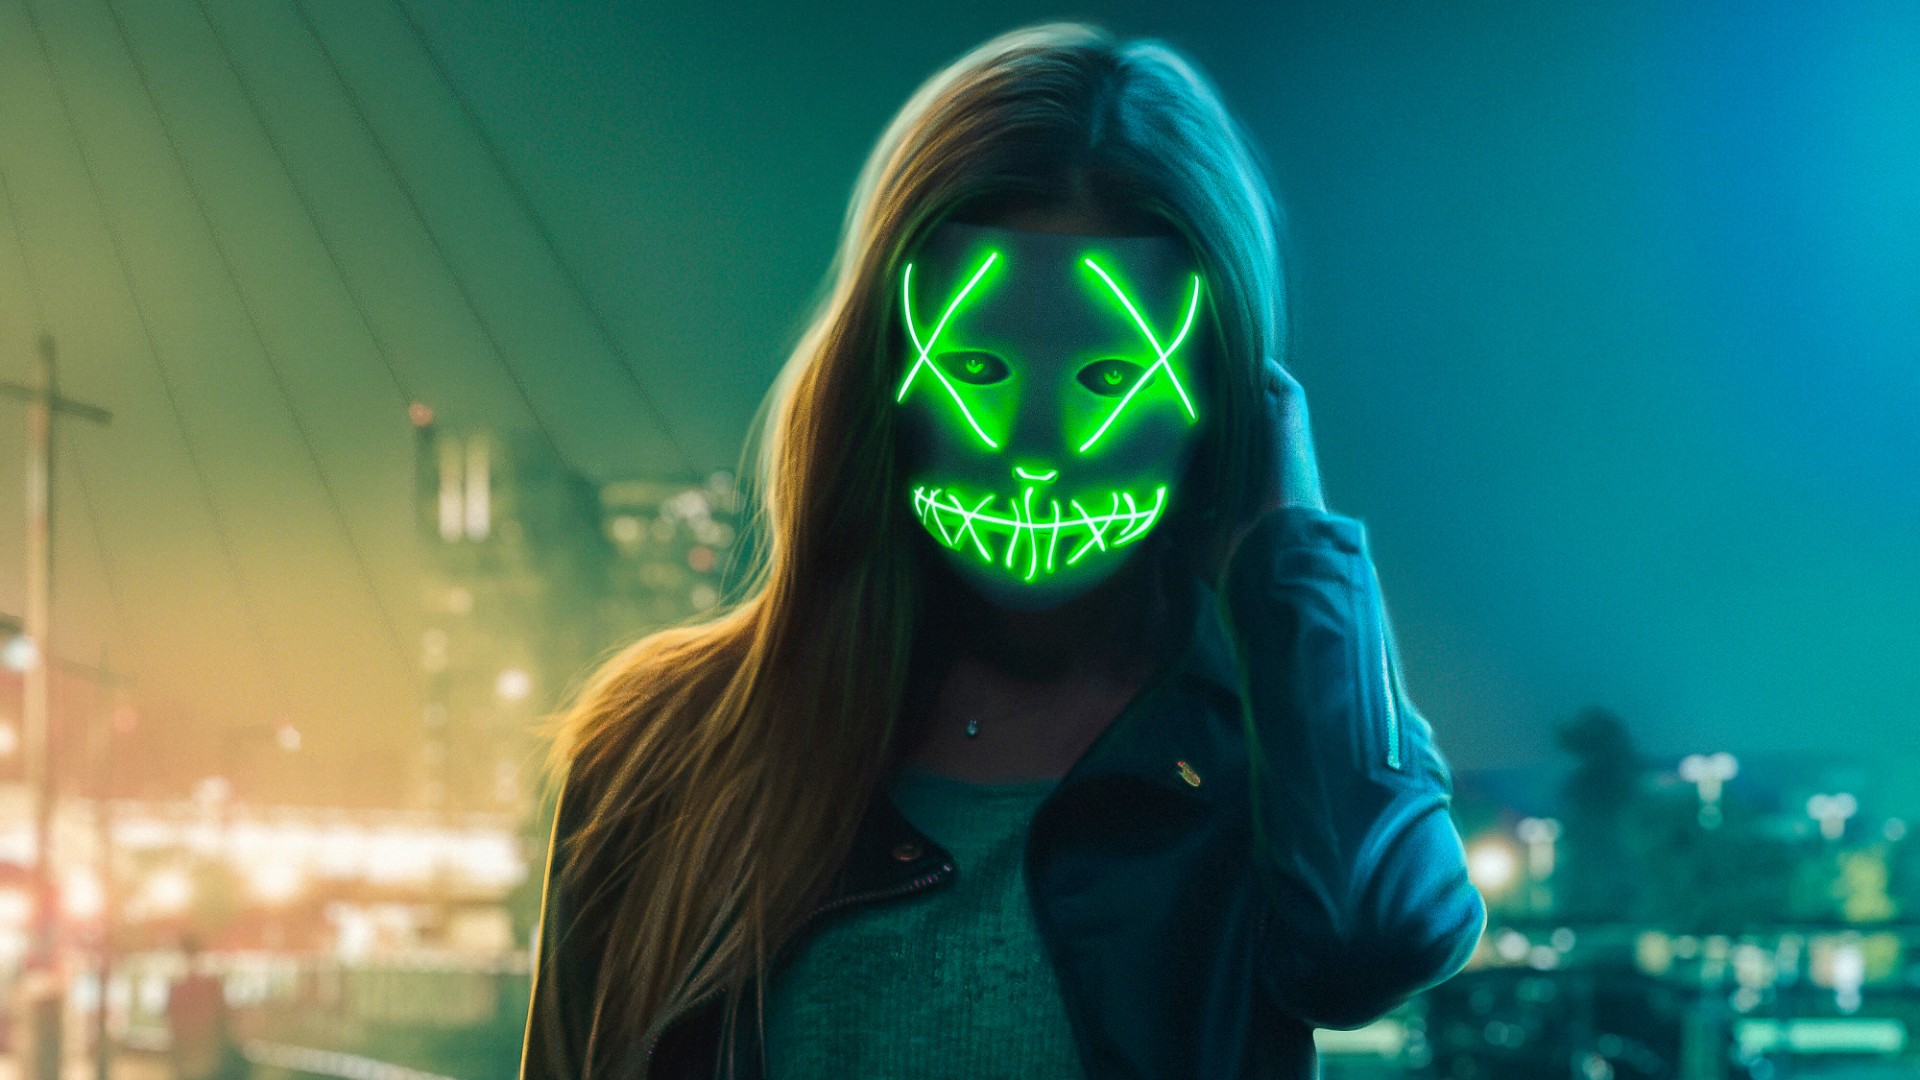 Neon Mask Girl Wallpaper 4k